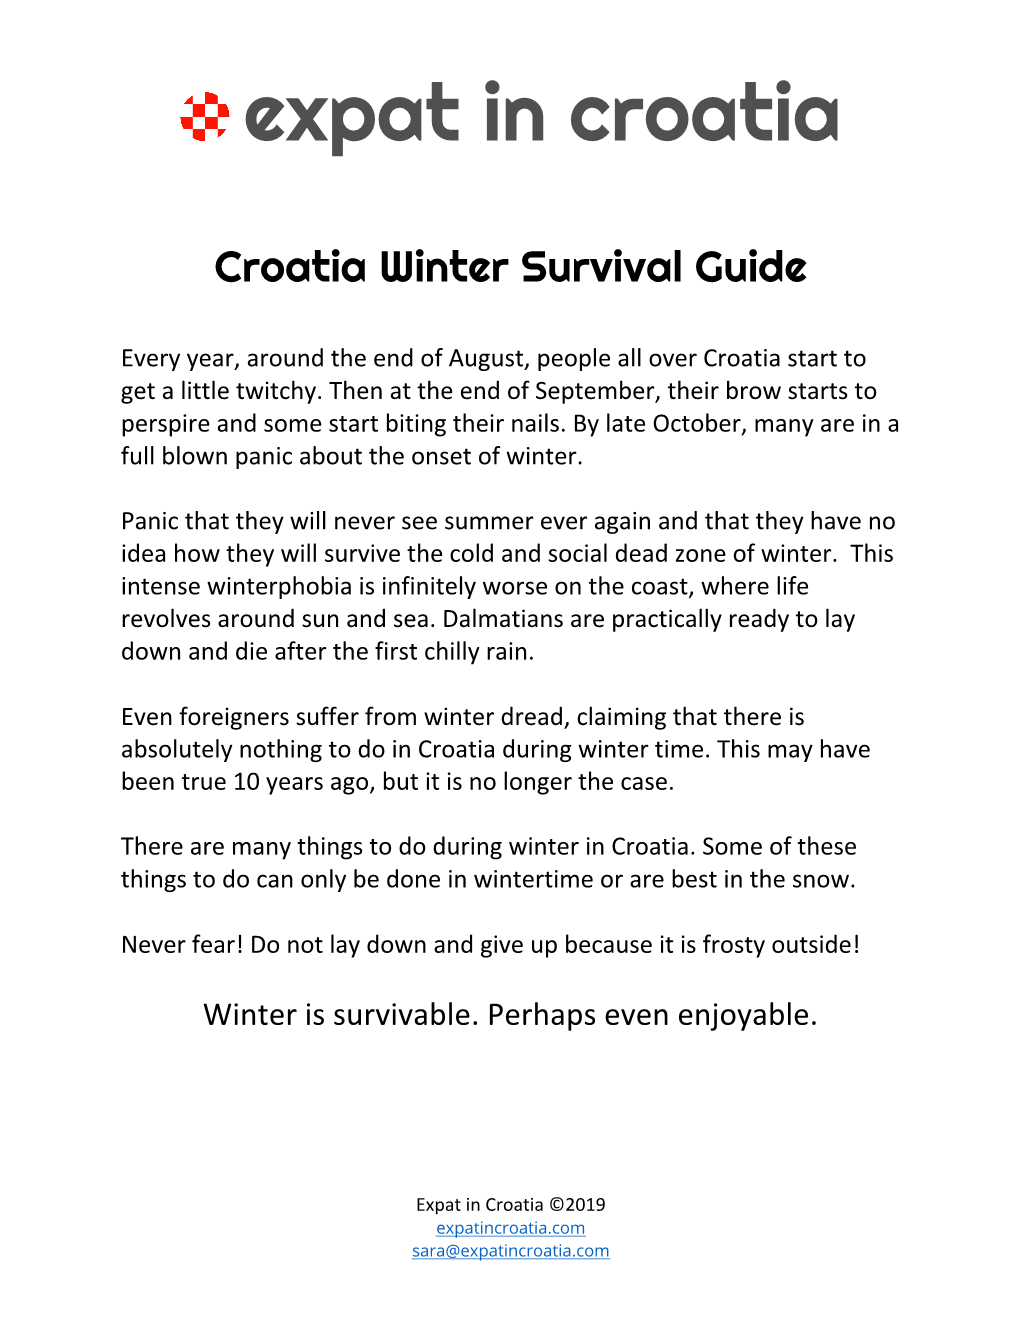 Croatia Winter Survival Guide-V2.0